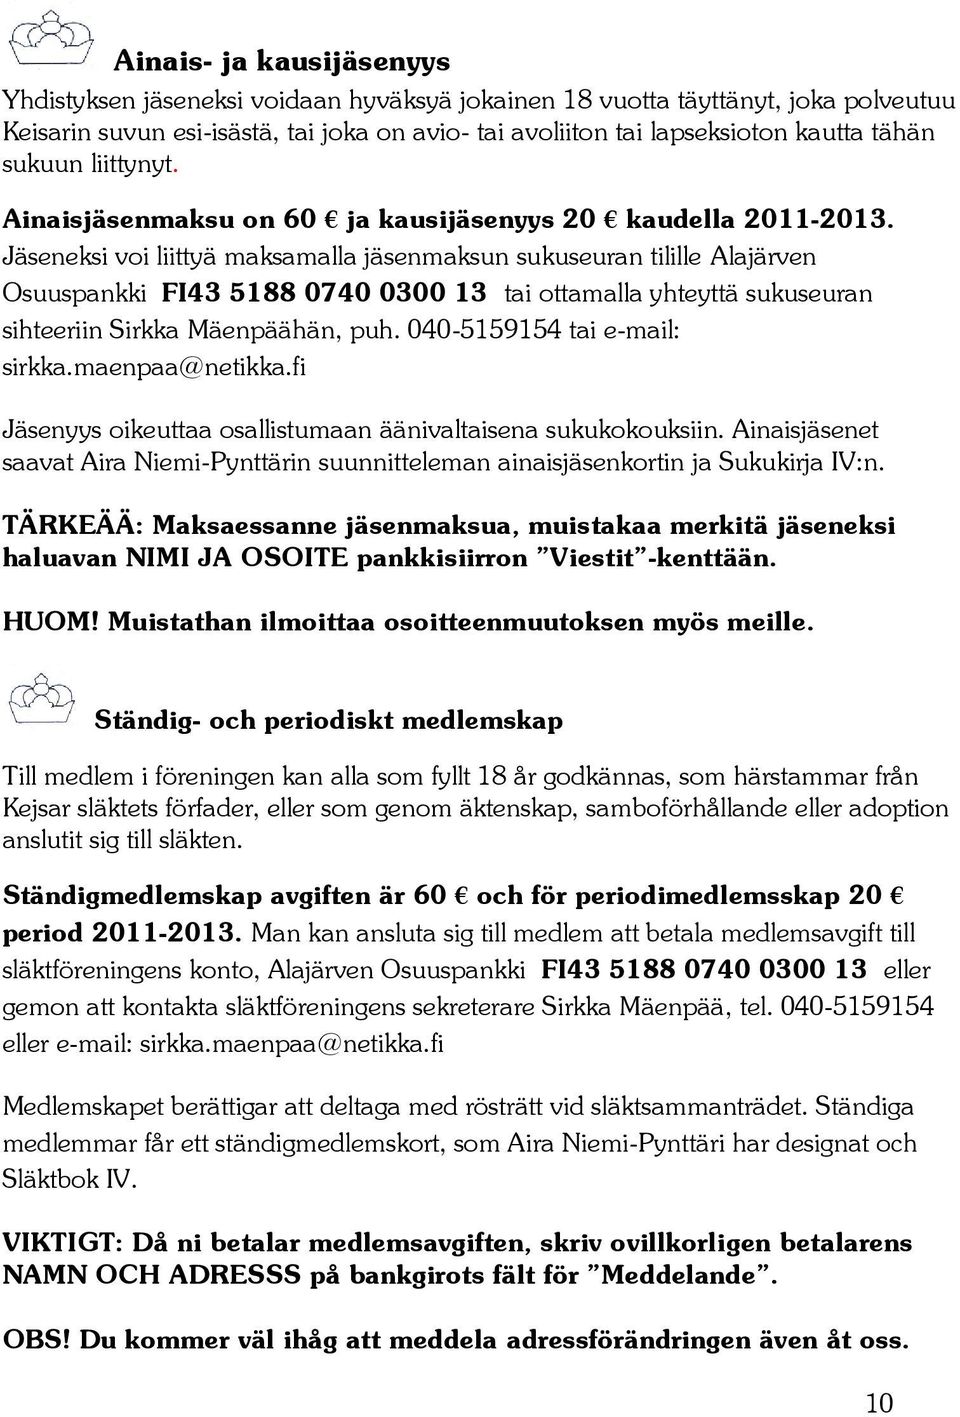 Jäseneksi voi liittyä maksamalla jäsenmaksun sukuseuran tilille Alajärven Osuuspankki FI43 5188 0740 0300 13 tai ottamalla yhteyttä sukuseuran sihteeriin Sirkka Mäenpäähän, puh.